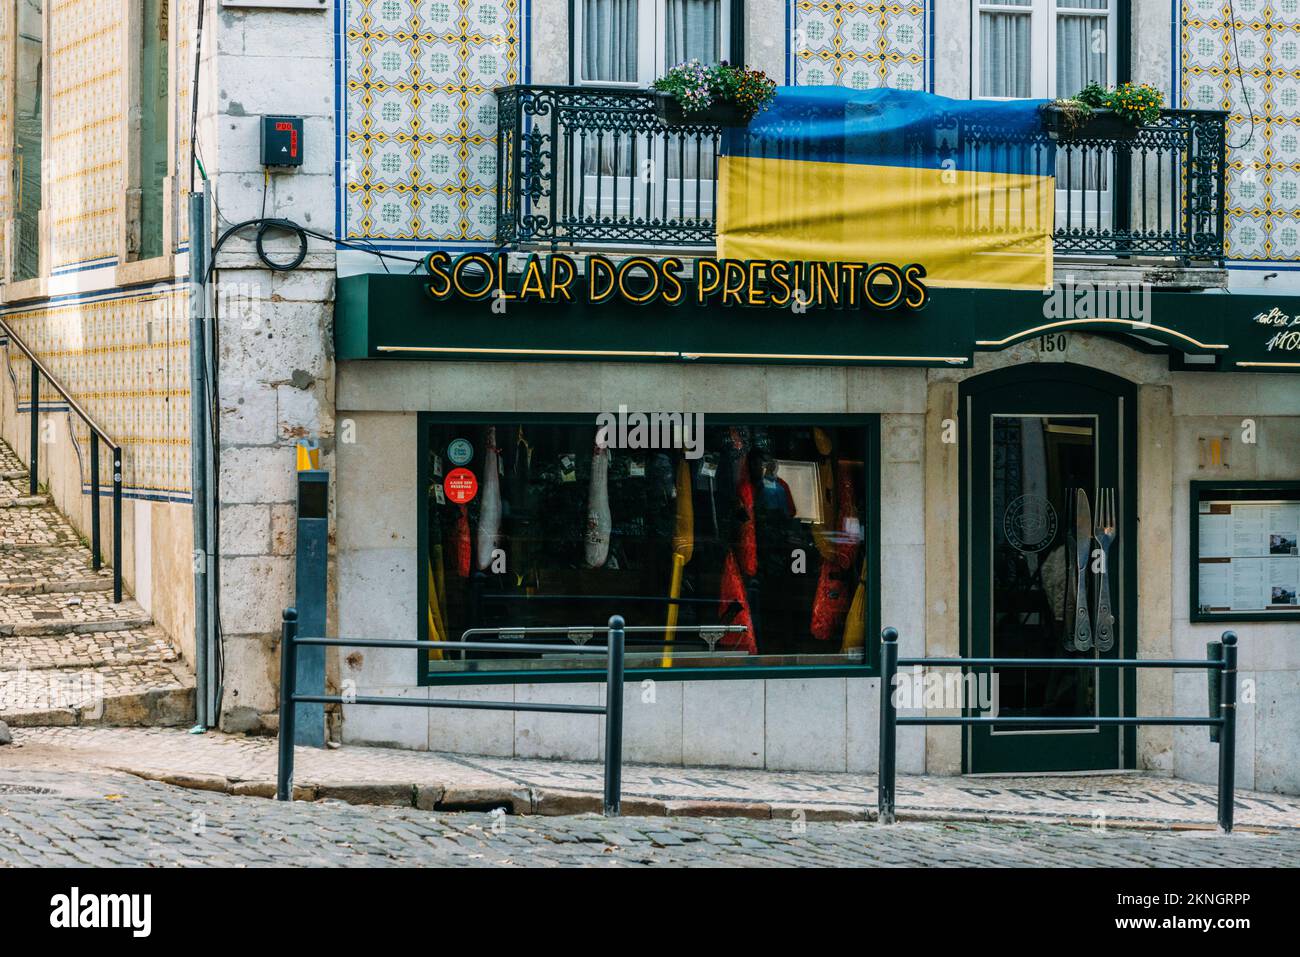 Facade of Solar dos Presuntos in Lisbon, Portugal, a popular restaurant near Avenida da Liberdade Stock Photo